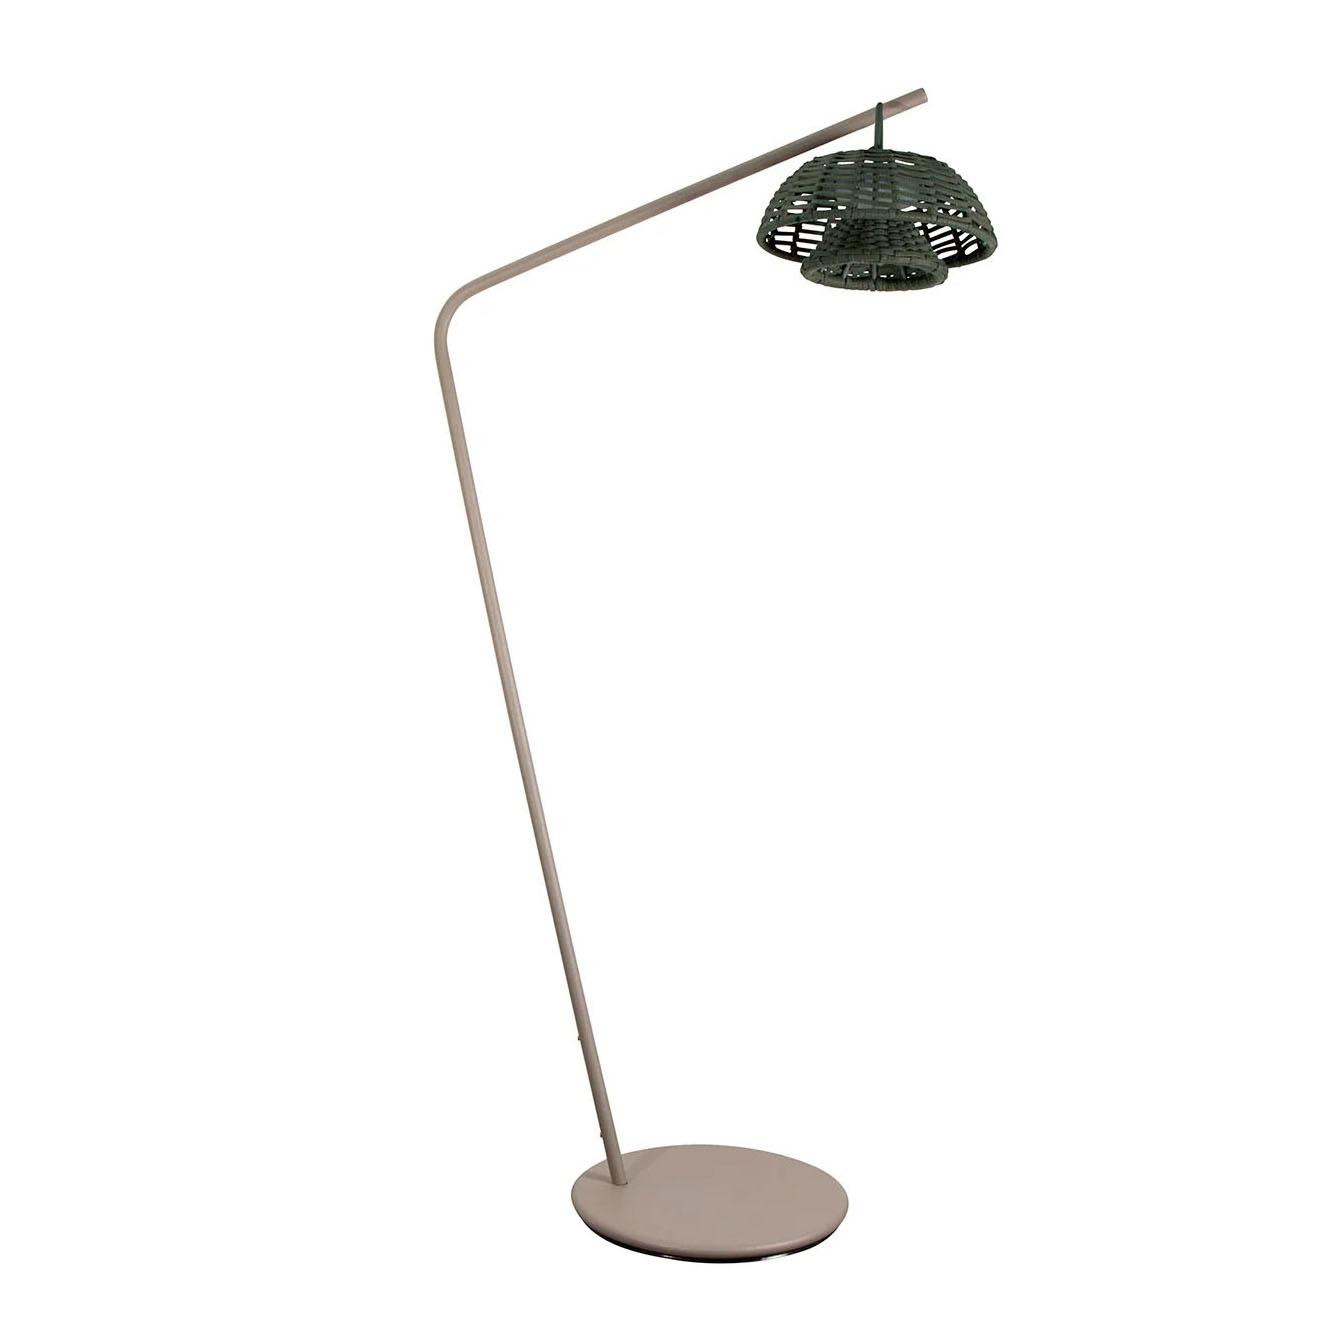 Cane-Line Illusion pied de lampe vloerlamp taupe LED oplaadbaar dark grey  kap | Flinders